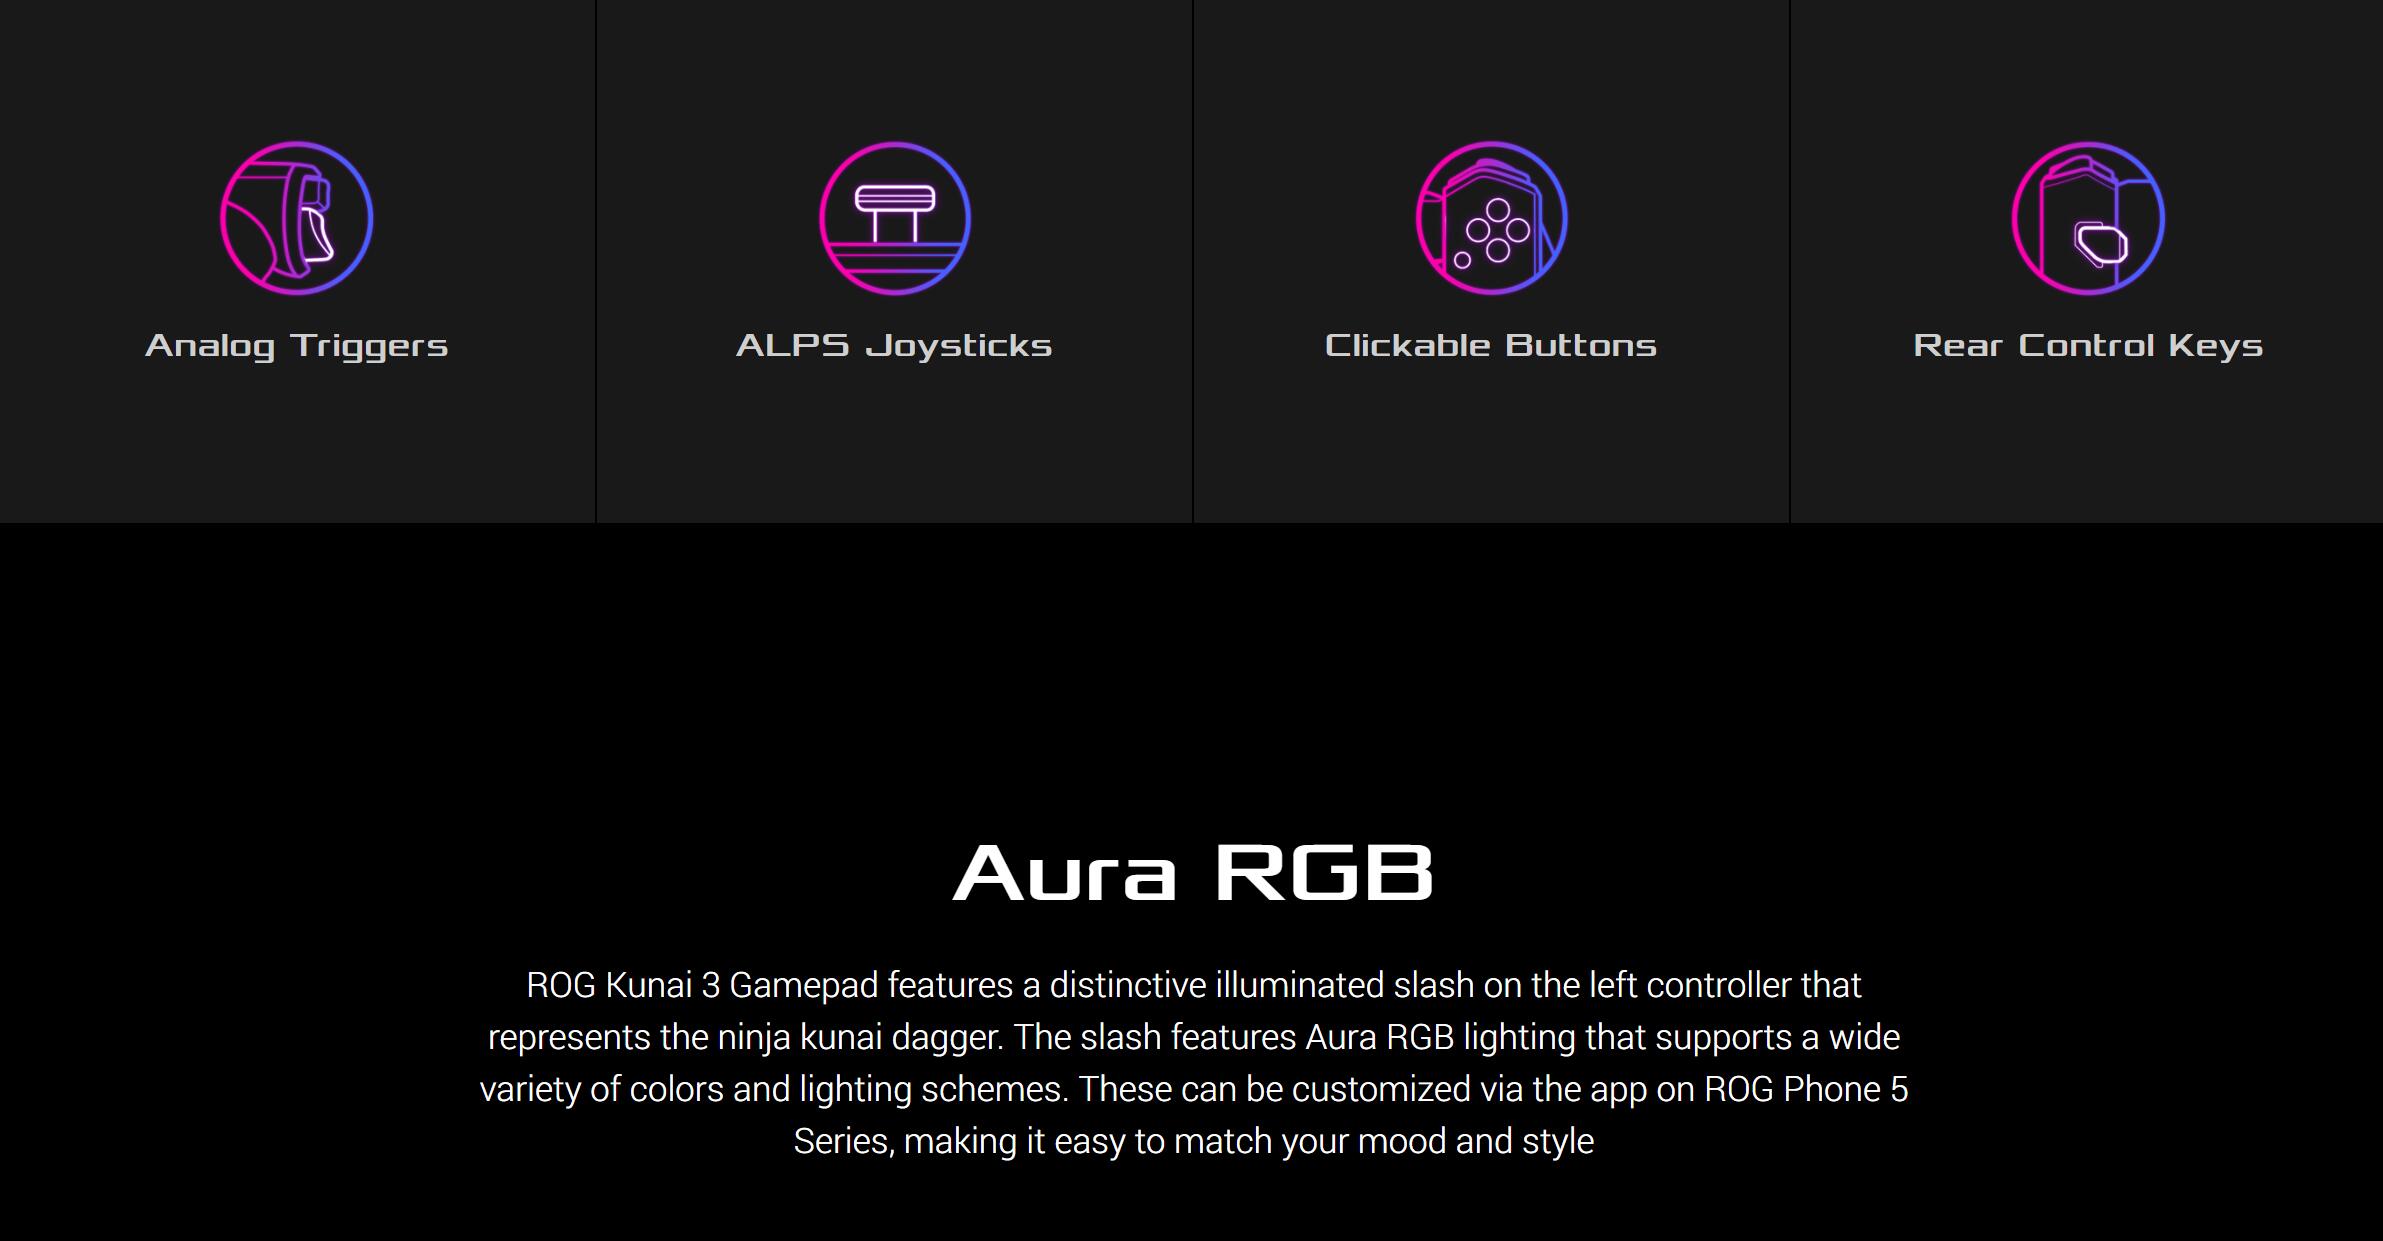 ASUS ROG Kunai 3 Gamepad For ROG Phone 5 36